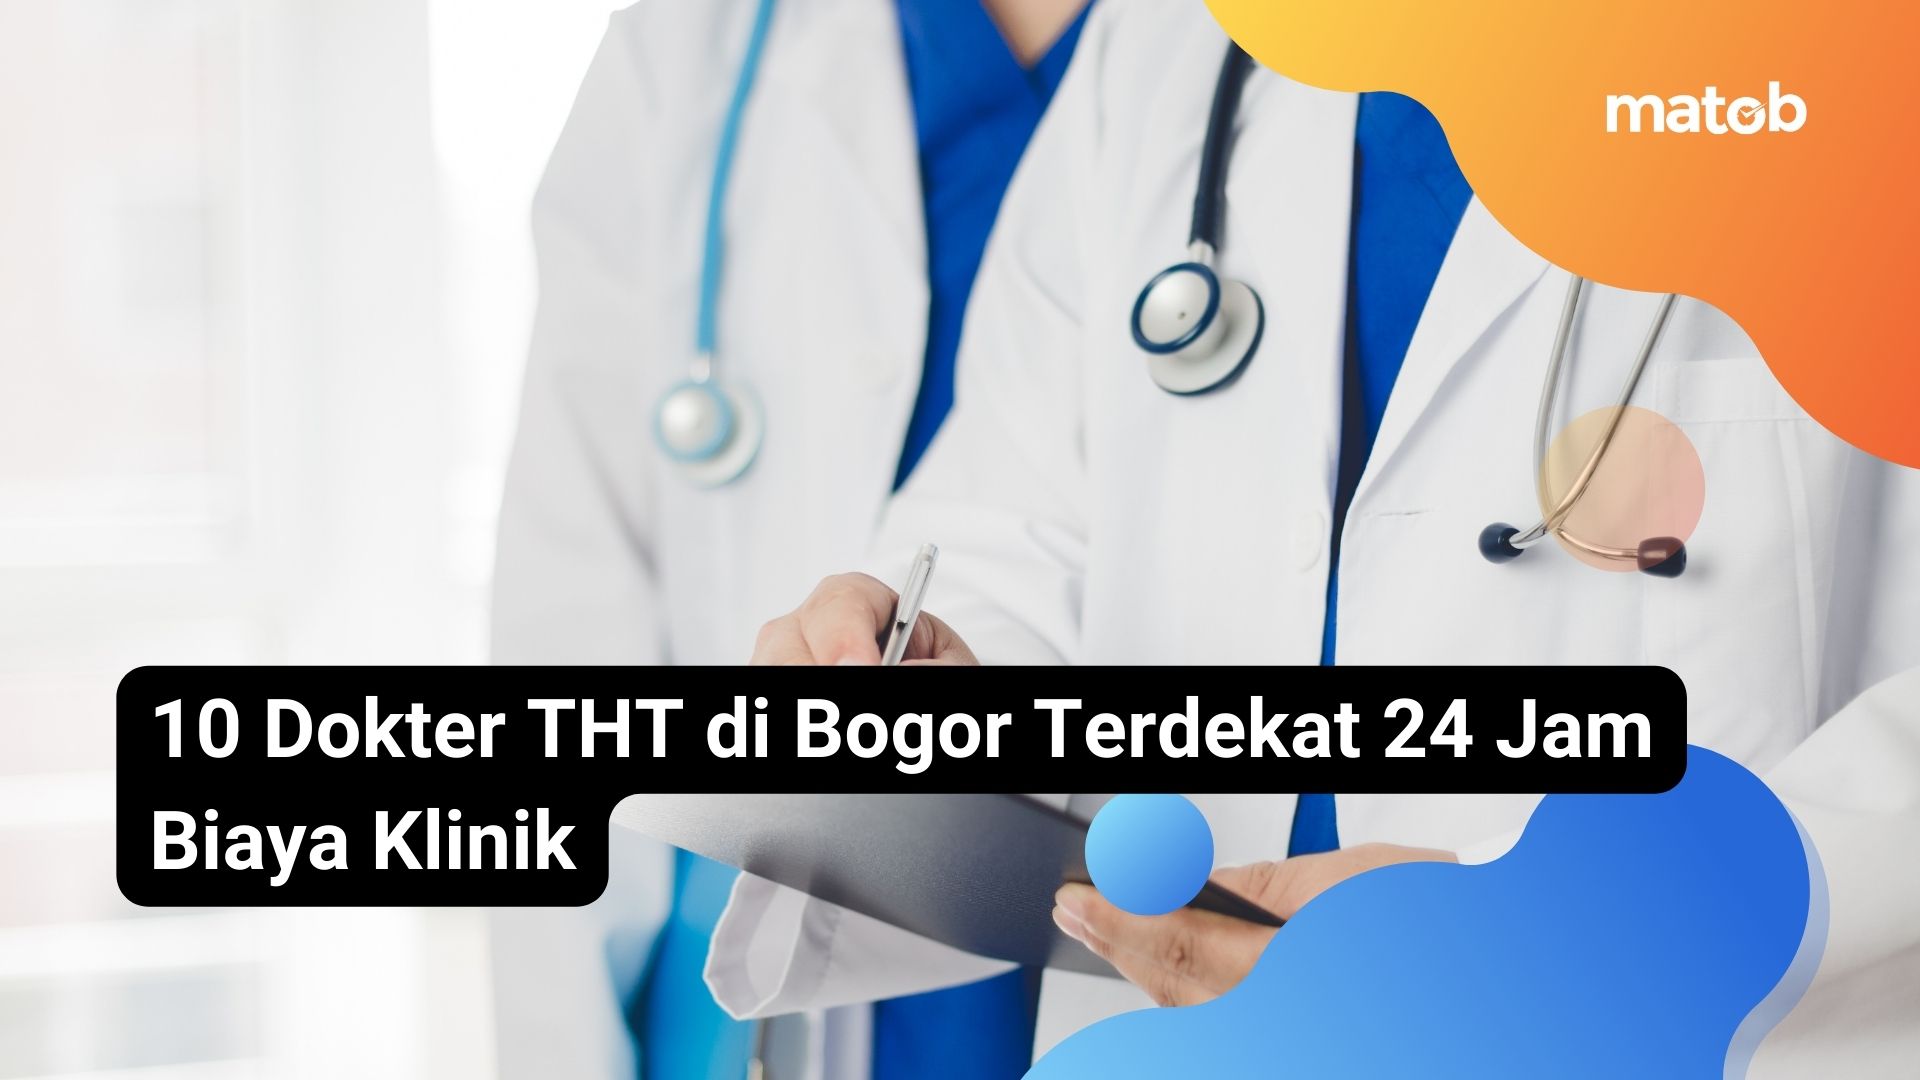 10 Dokter THT di Bogor Terdekat 24 Jam Biaya Klinik - Matob Bisnis